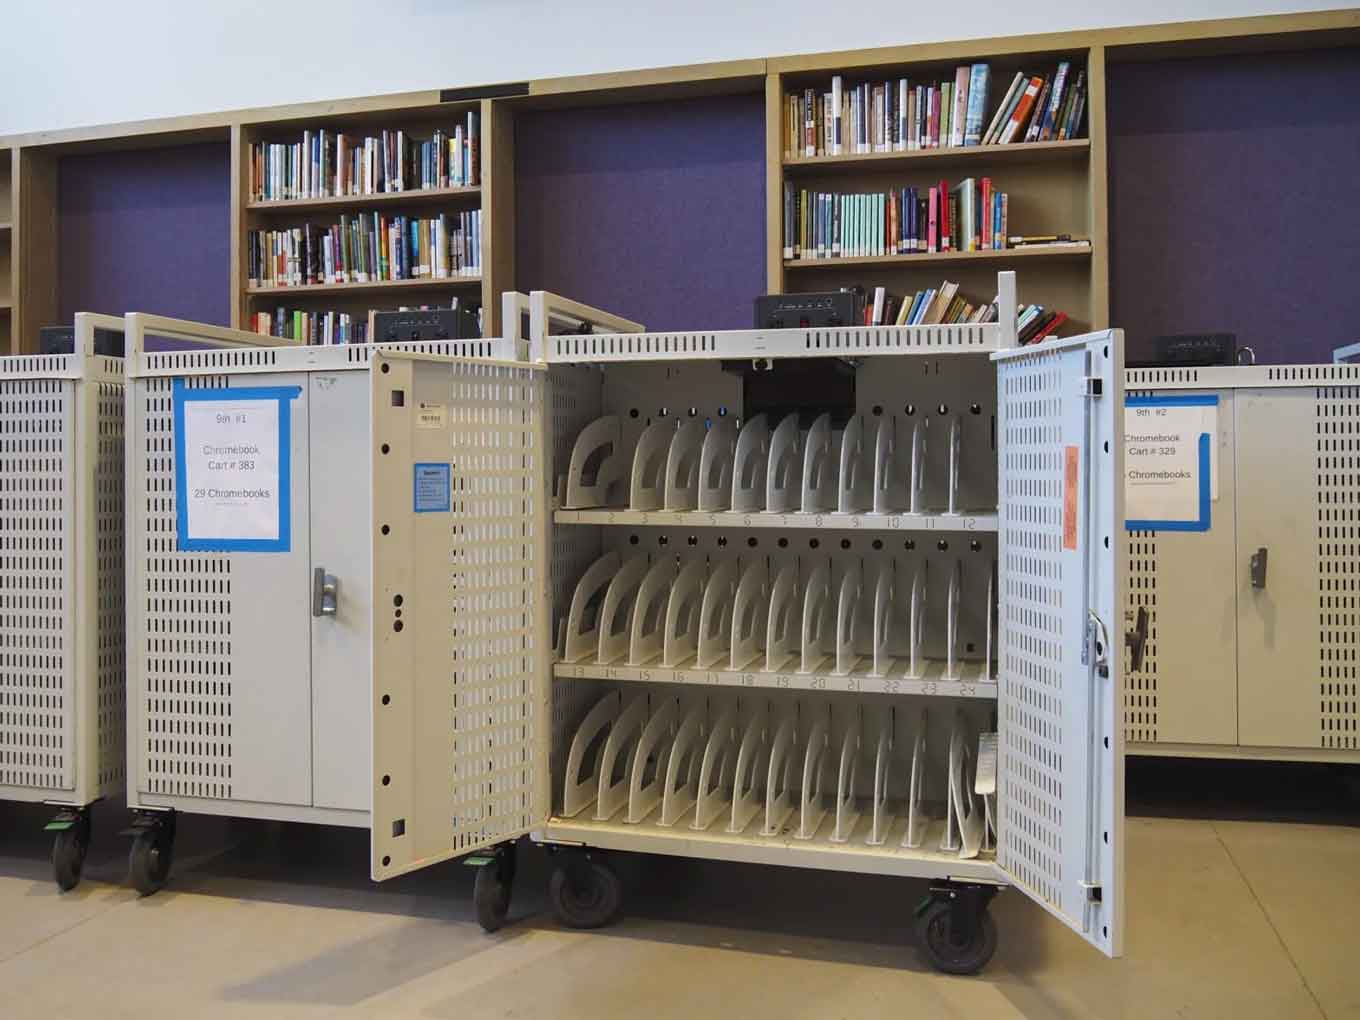 In het mediacentrum van Castlemont zijn in mei 2021 Chromebook-karretjes helemaal leeg. In de begindagen van de pandemie werd elke Chromebook op de campus uitgeleend aan studenten tijdens leren op afstand.